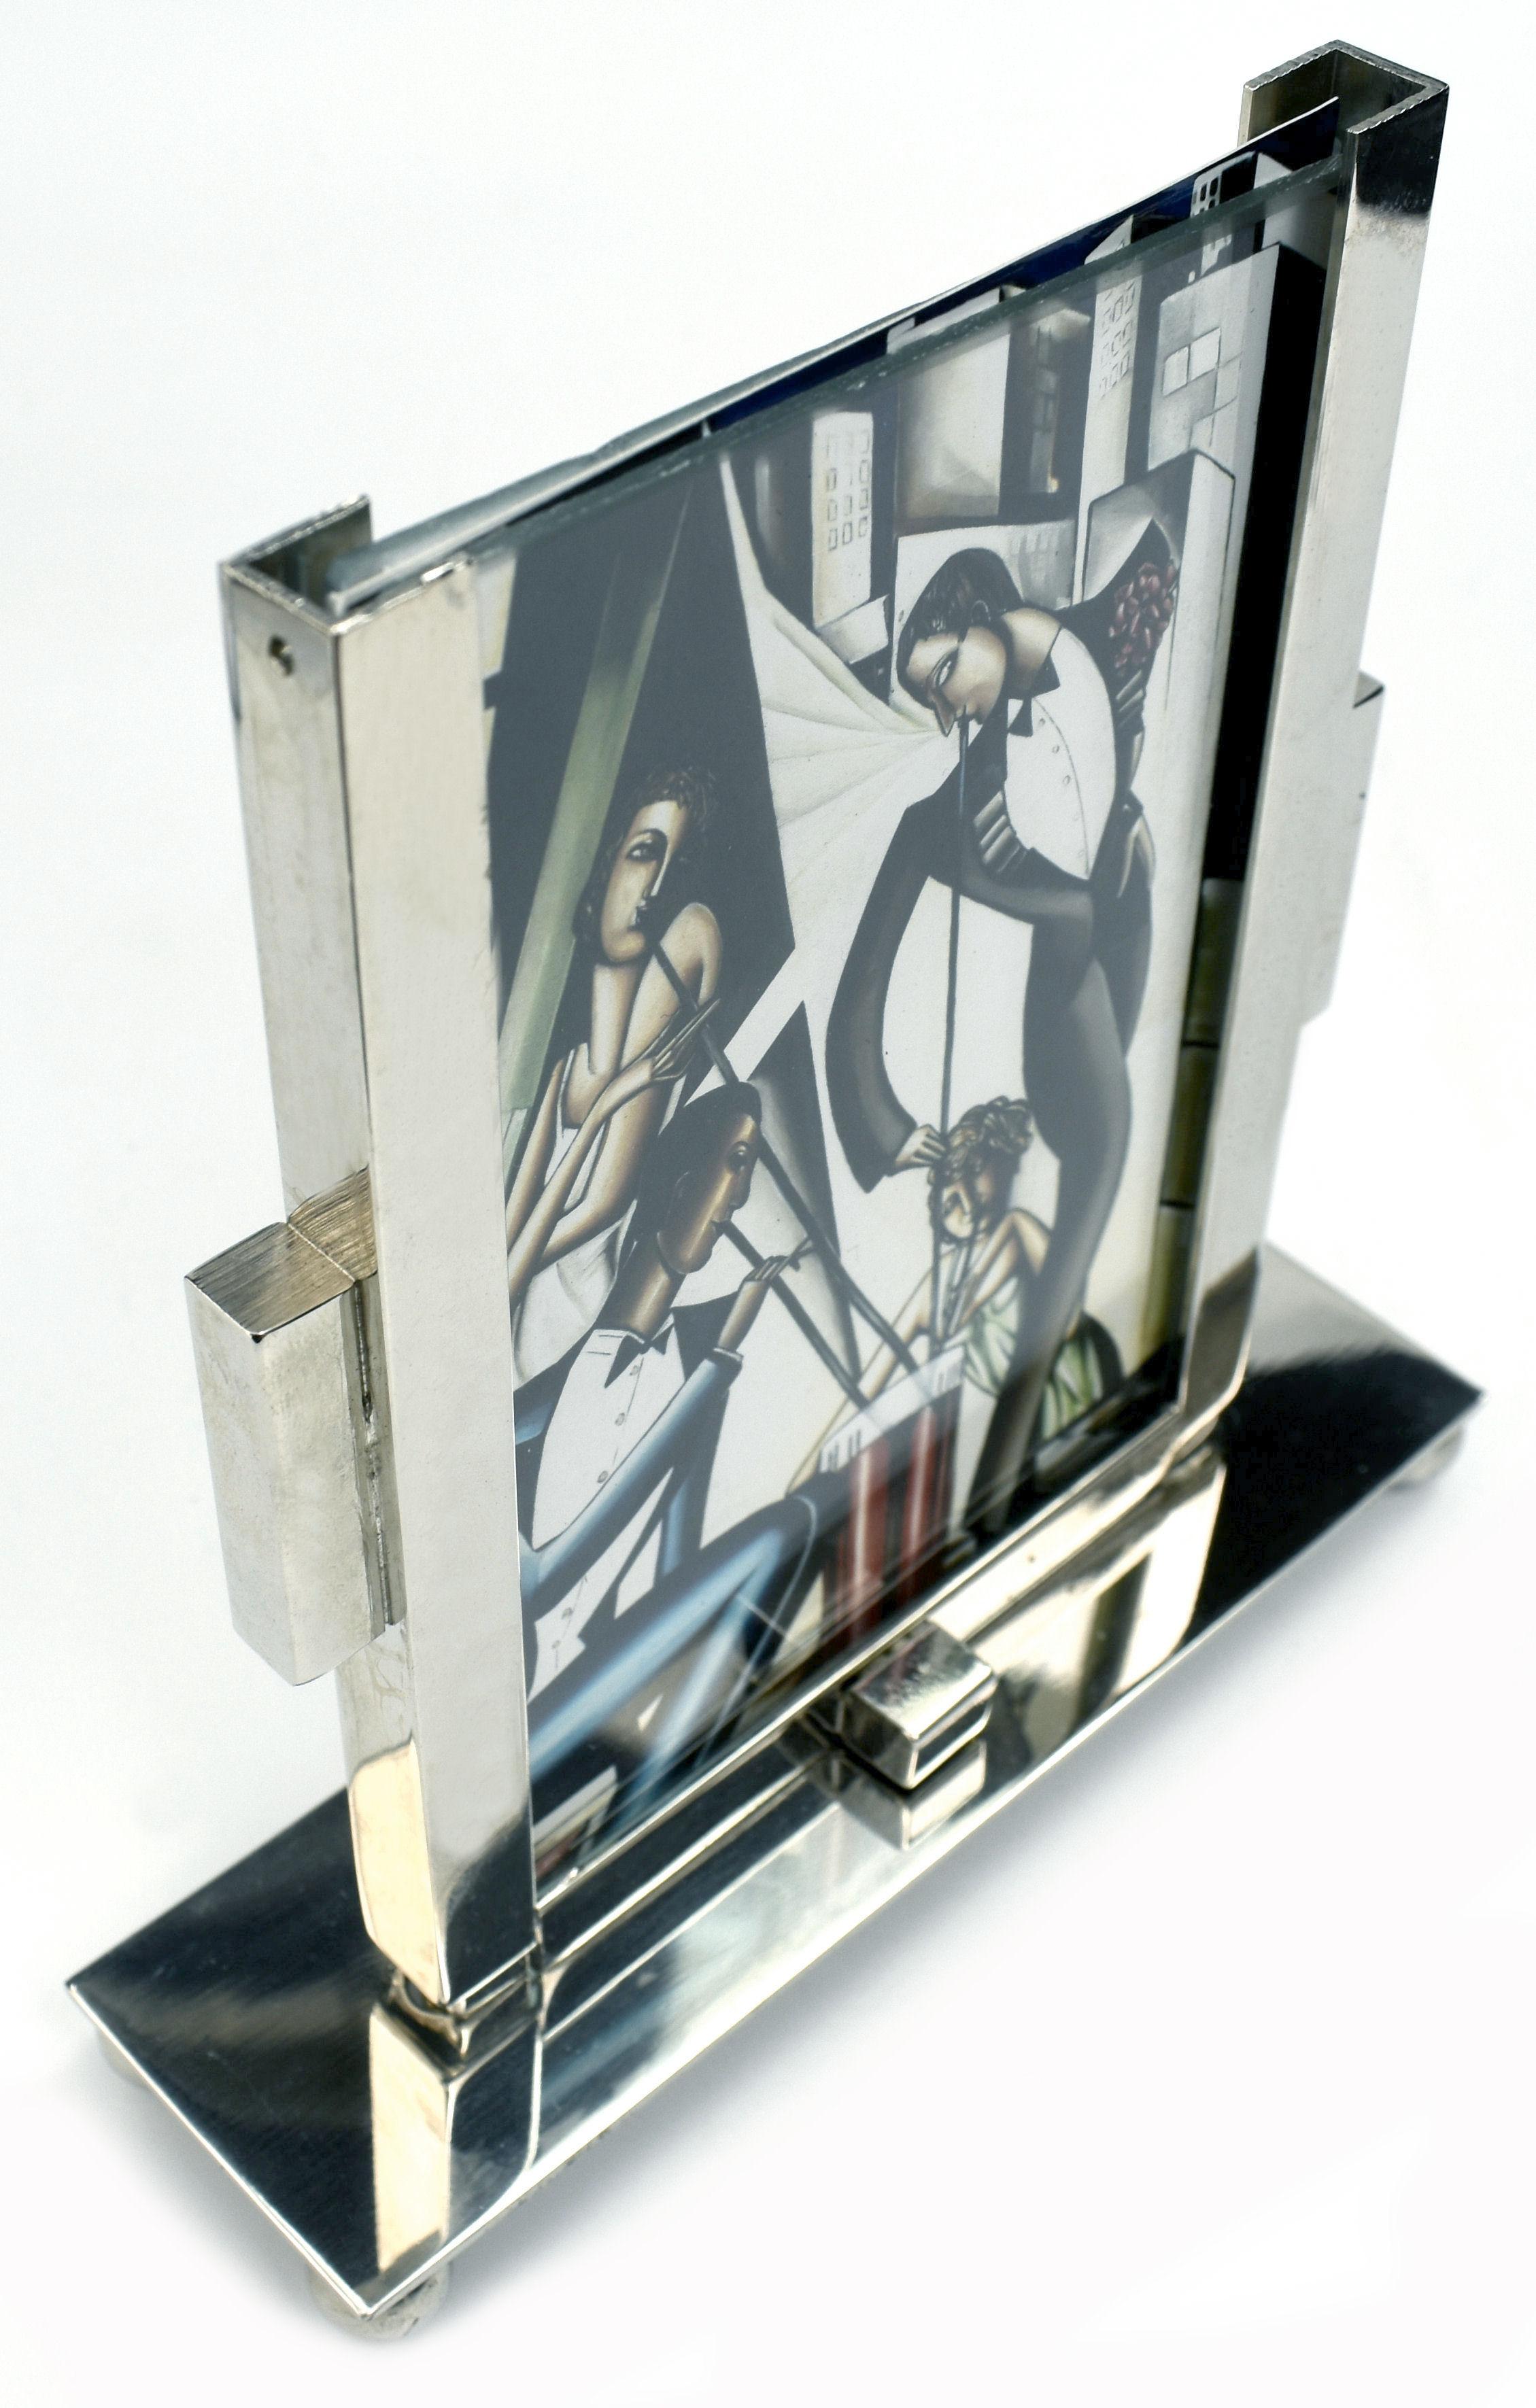 Cadre photo moderniste Art déco des années 1930 très élégant en chrome et verre. Le cadre comporte deux morceaux de verre qui s'insèrent dans le support chromé, ce qui permet d'afficher une image des deux côtés du cadre autoportant. Taille idéale et